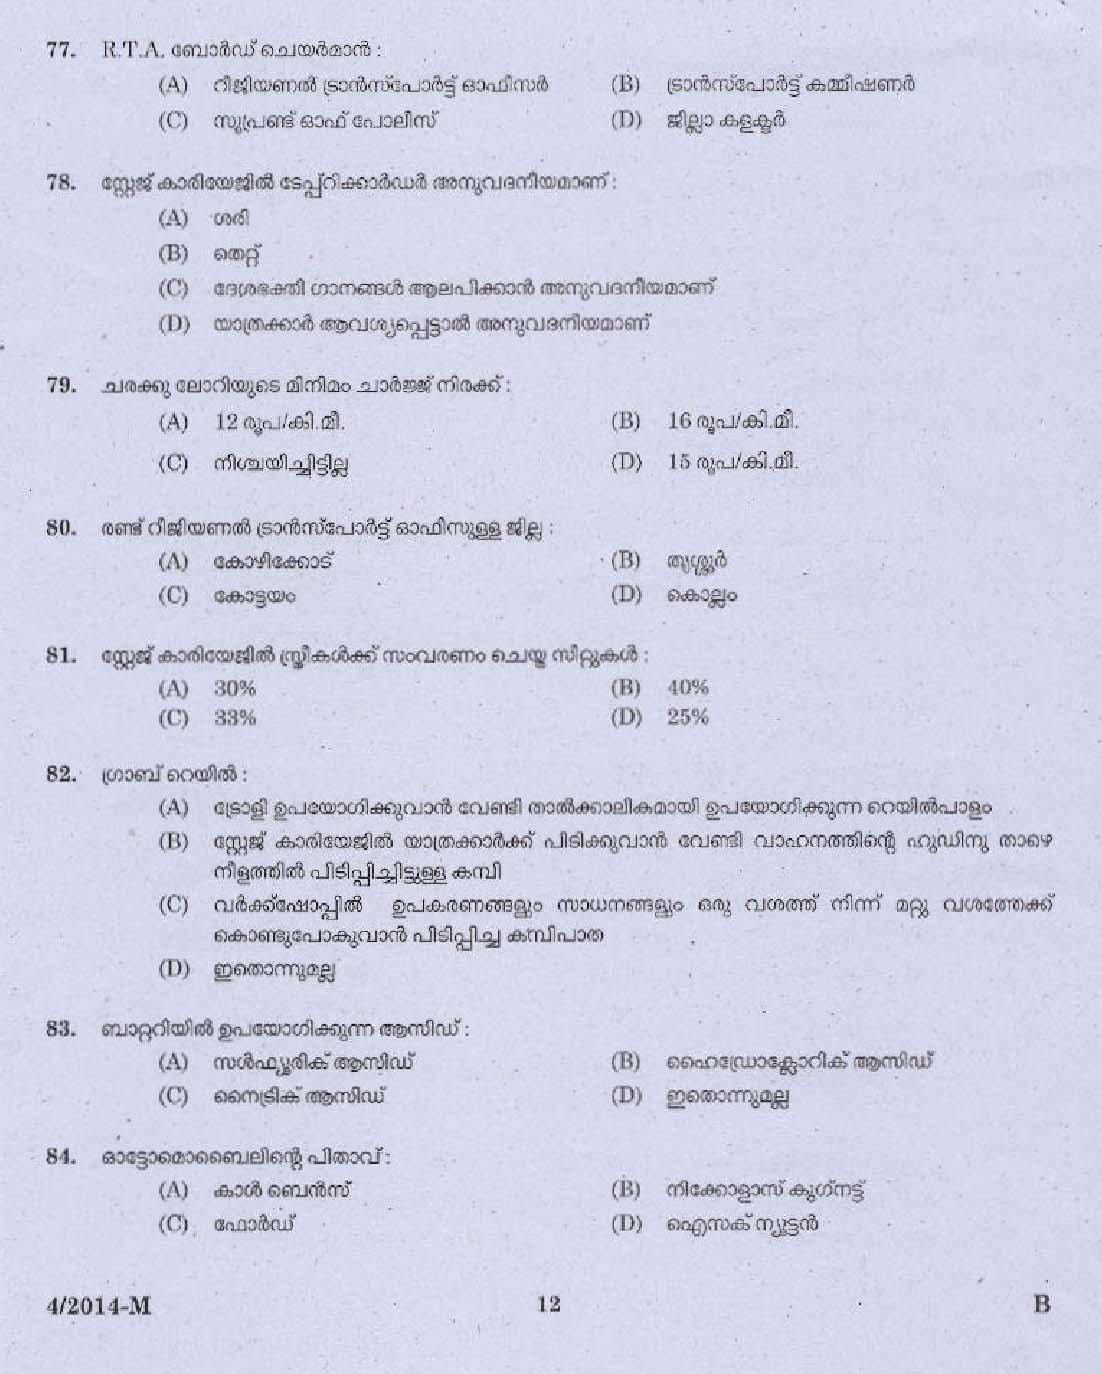 Kerala PSC Driver Grade II Exam 2014 Question Paper Code 042014 M 10